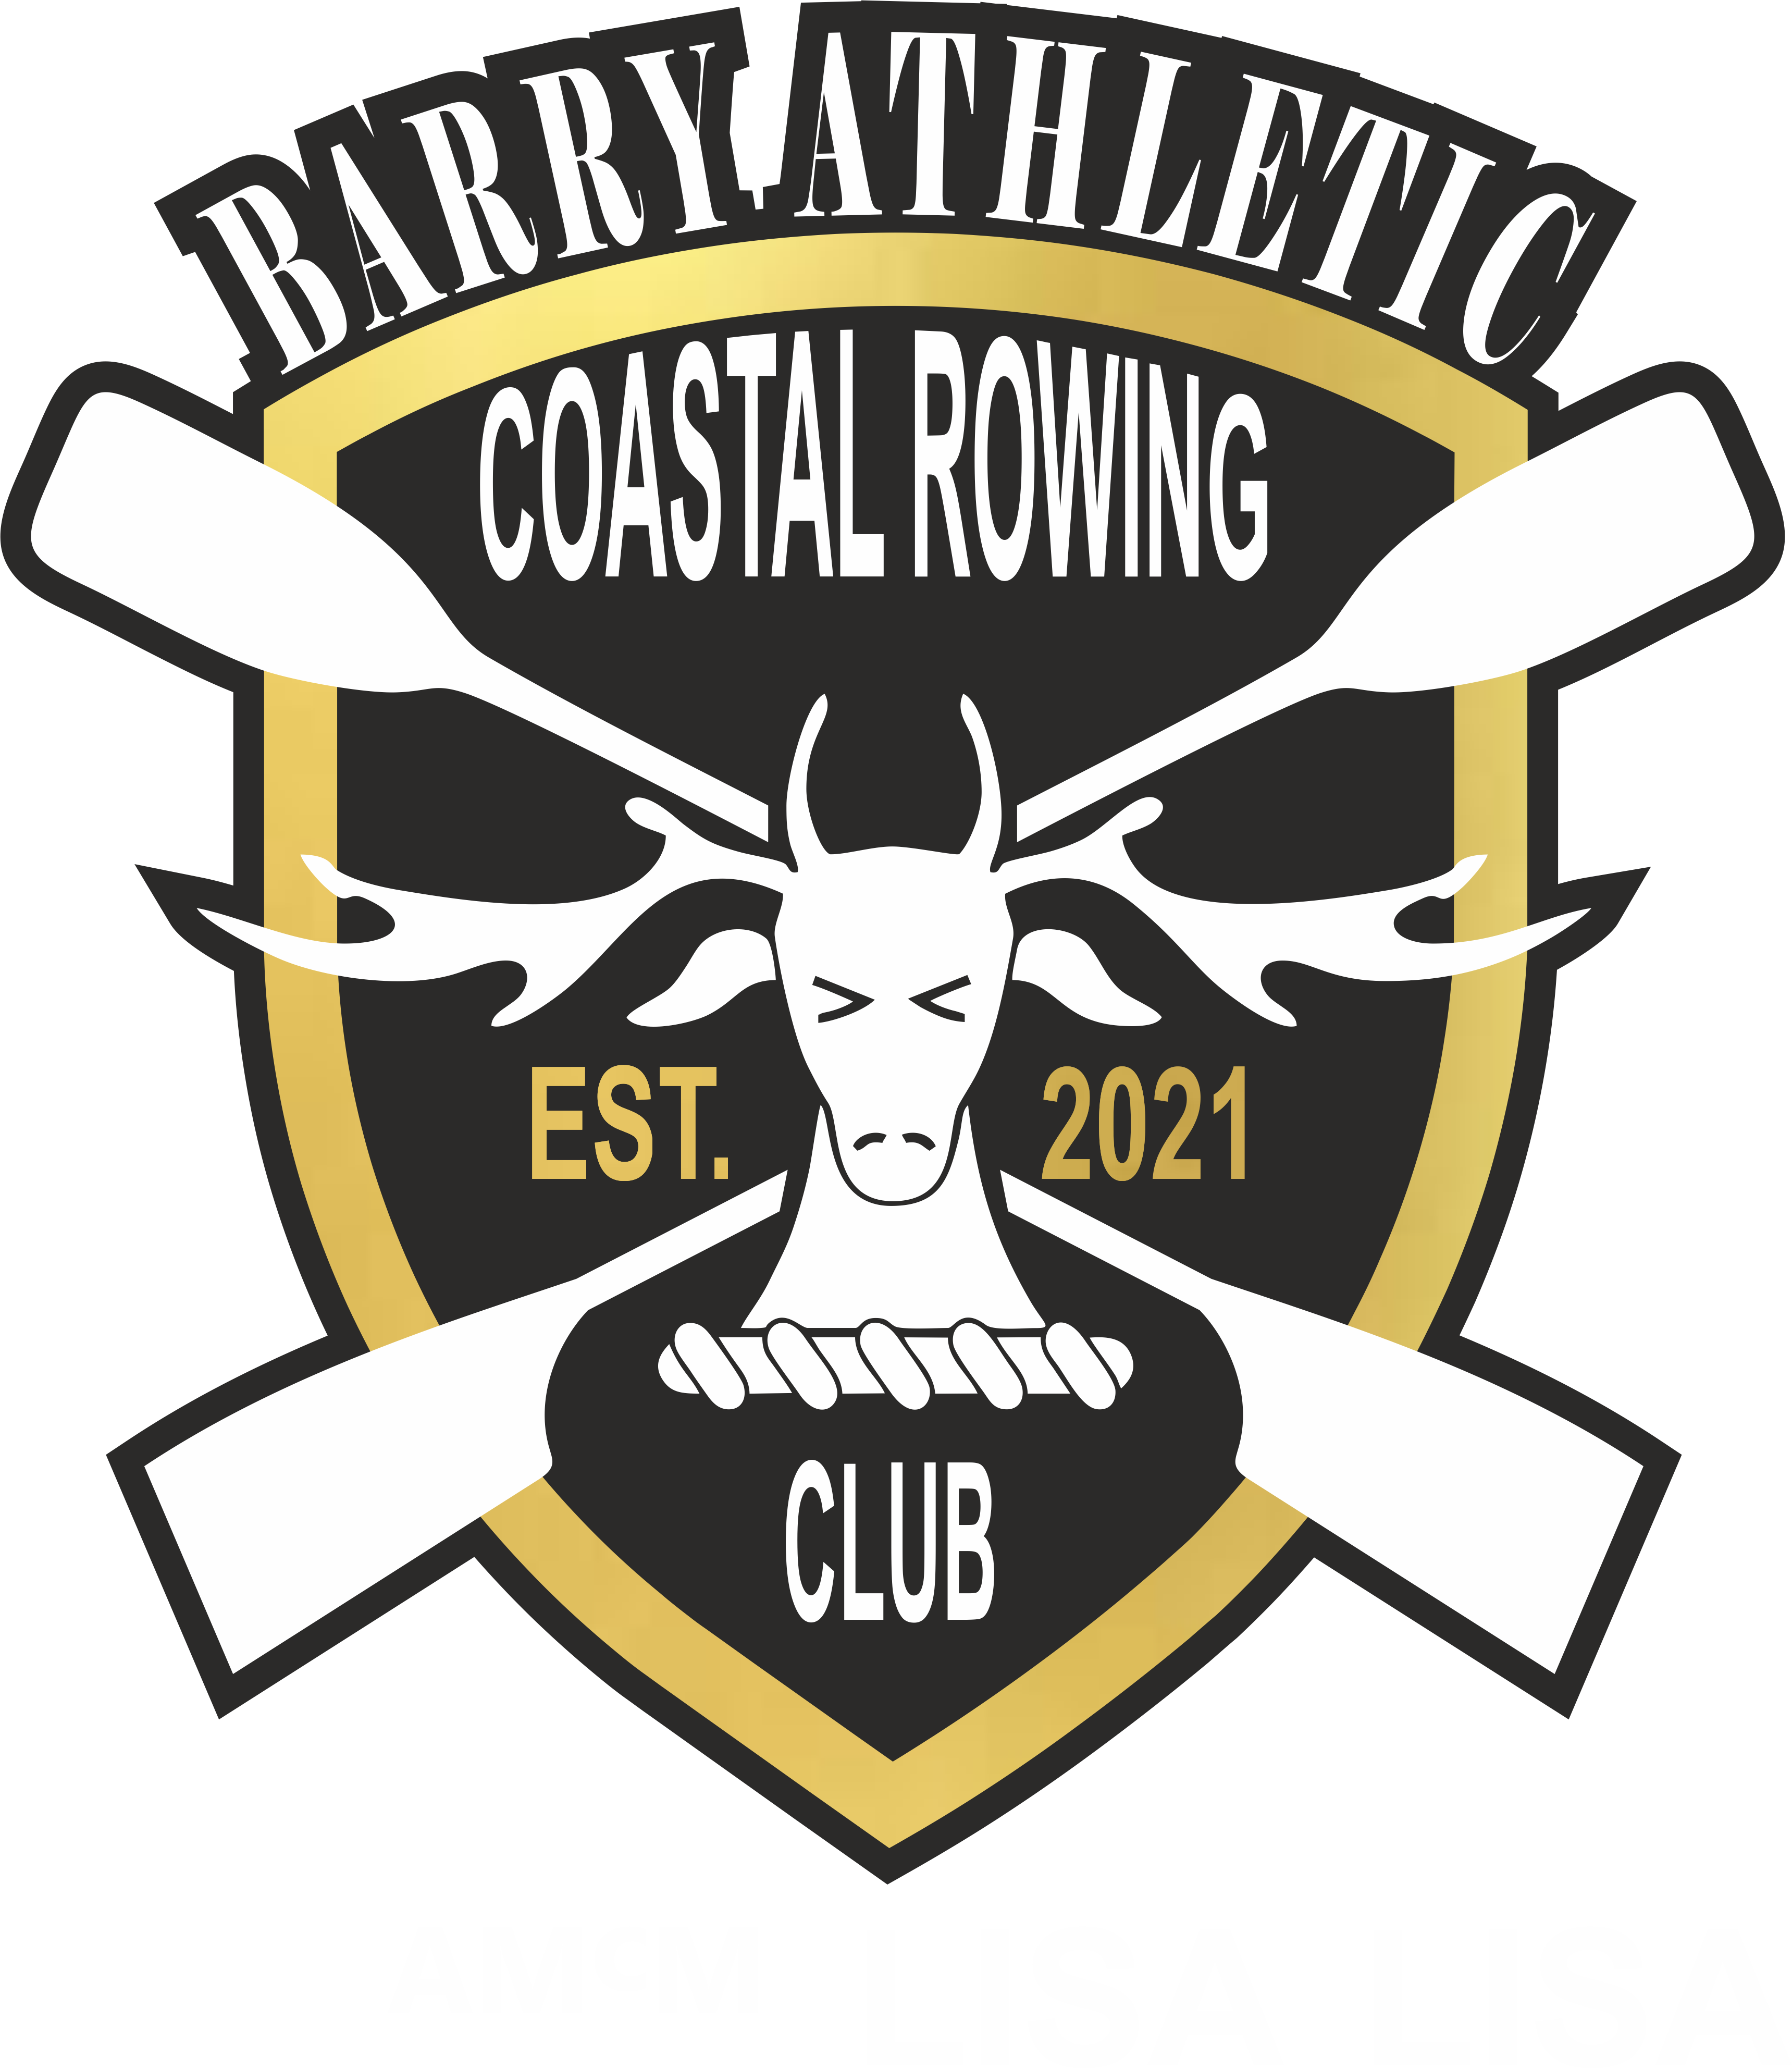 Barry Athletic Coastal Rowing Club logo